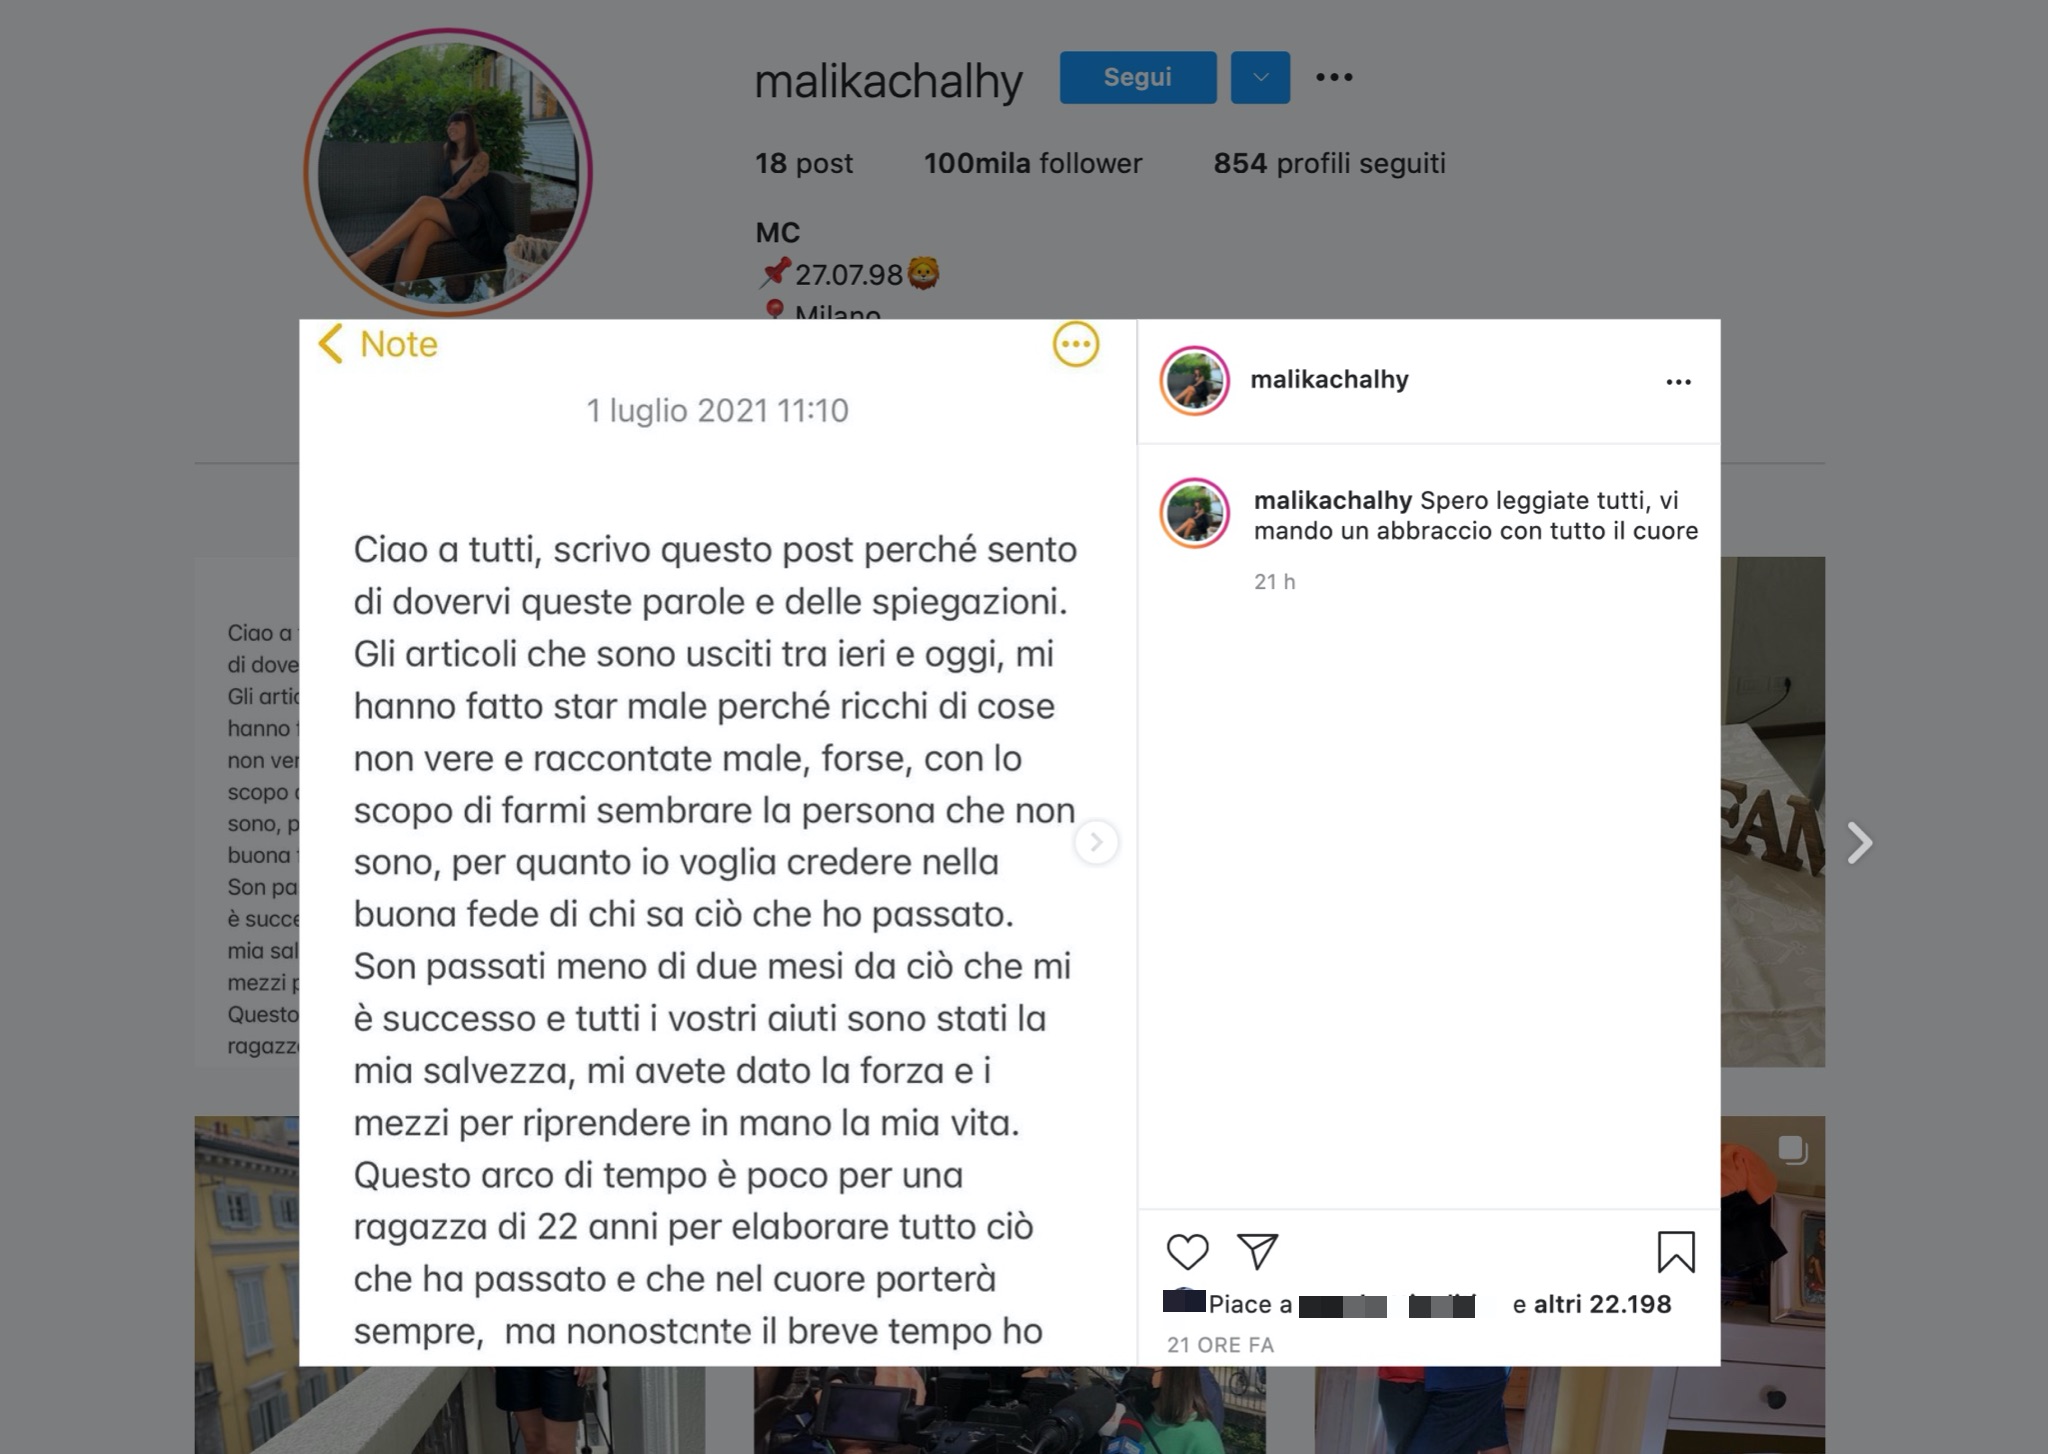 La risposta di Malika Chalhy dopo le polemiche su come ha usato i soldi delle donazioni